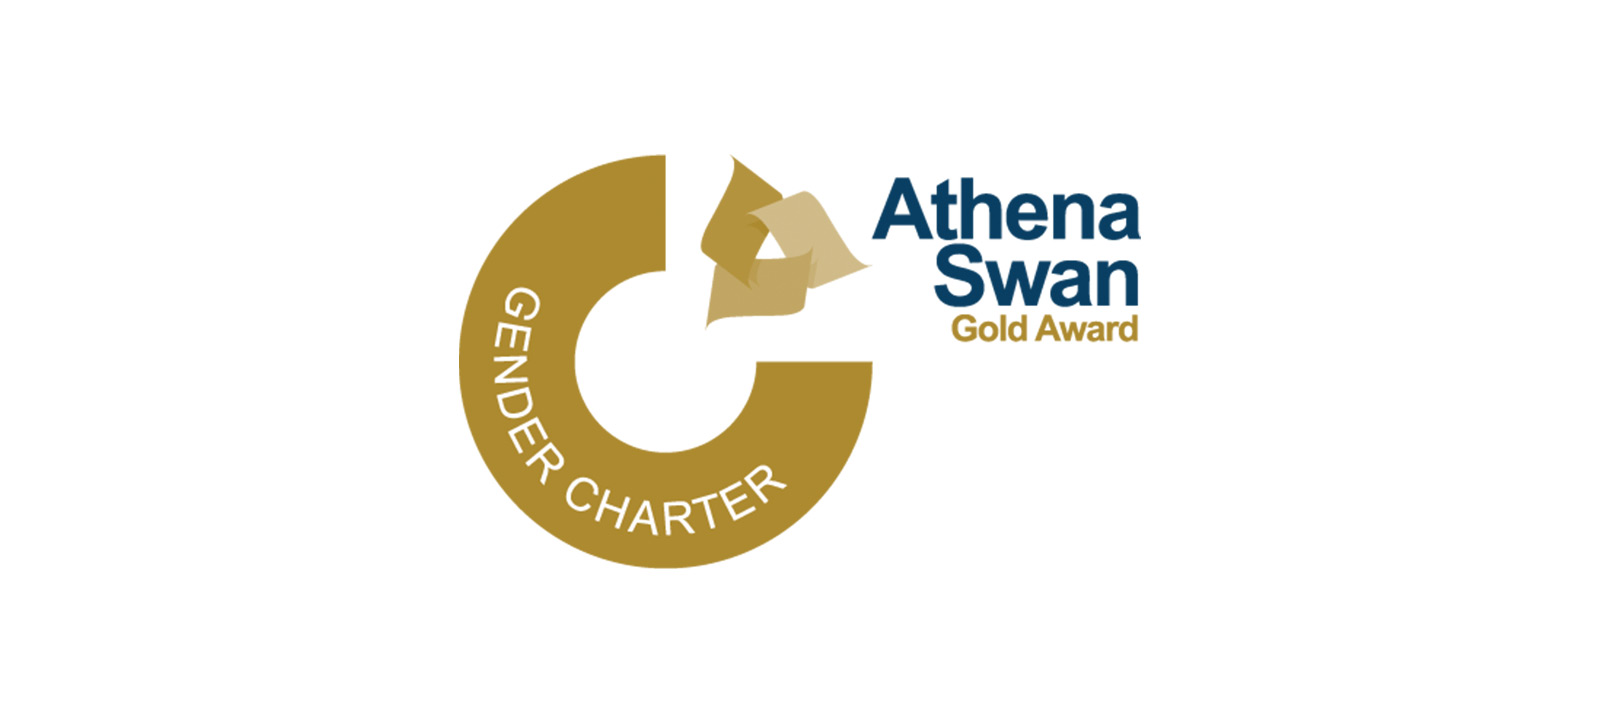 Athena Gold